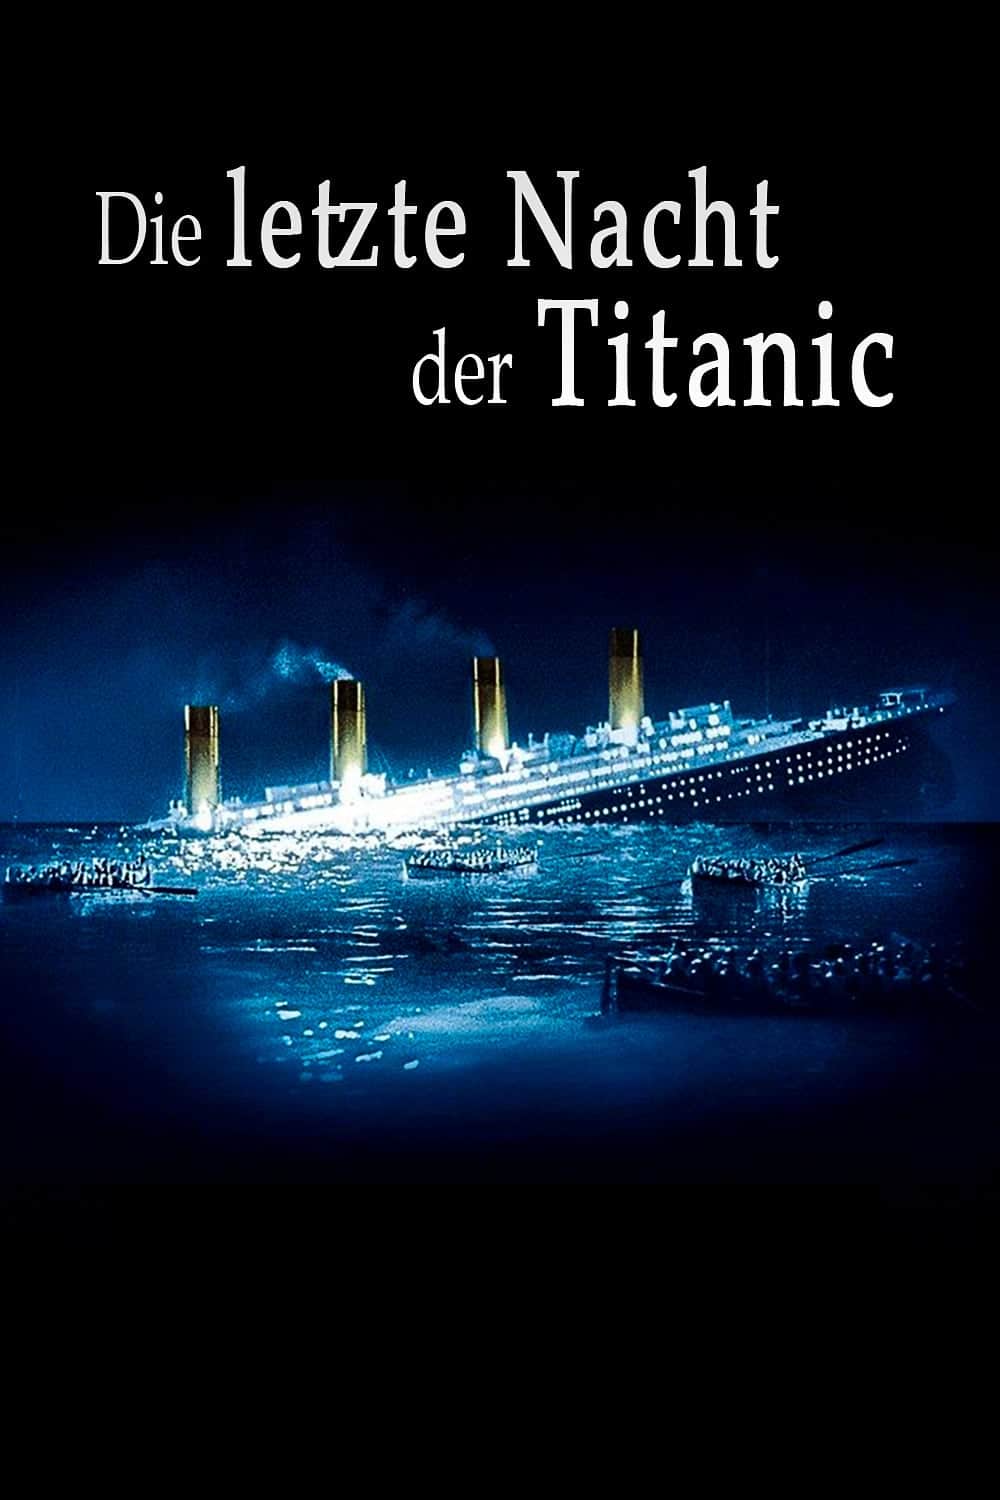 Plakat von "Die letzte Nacht der Titanic"